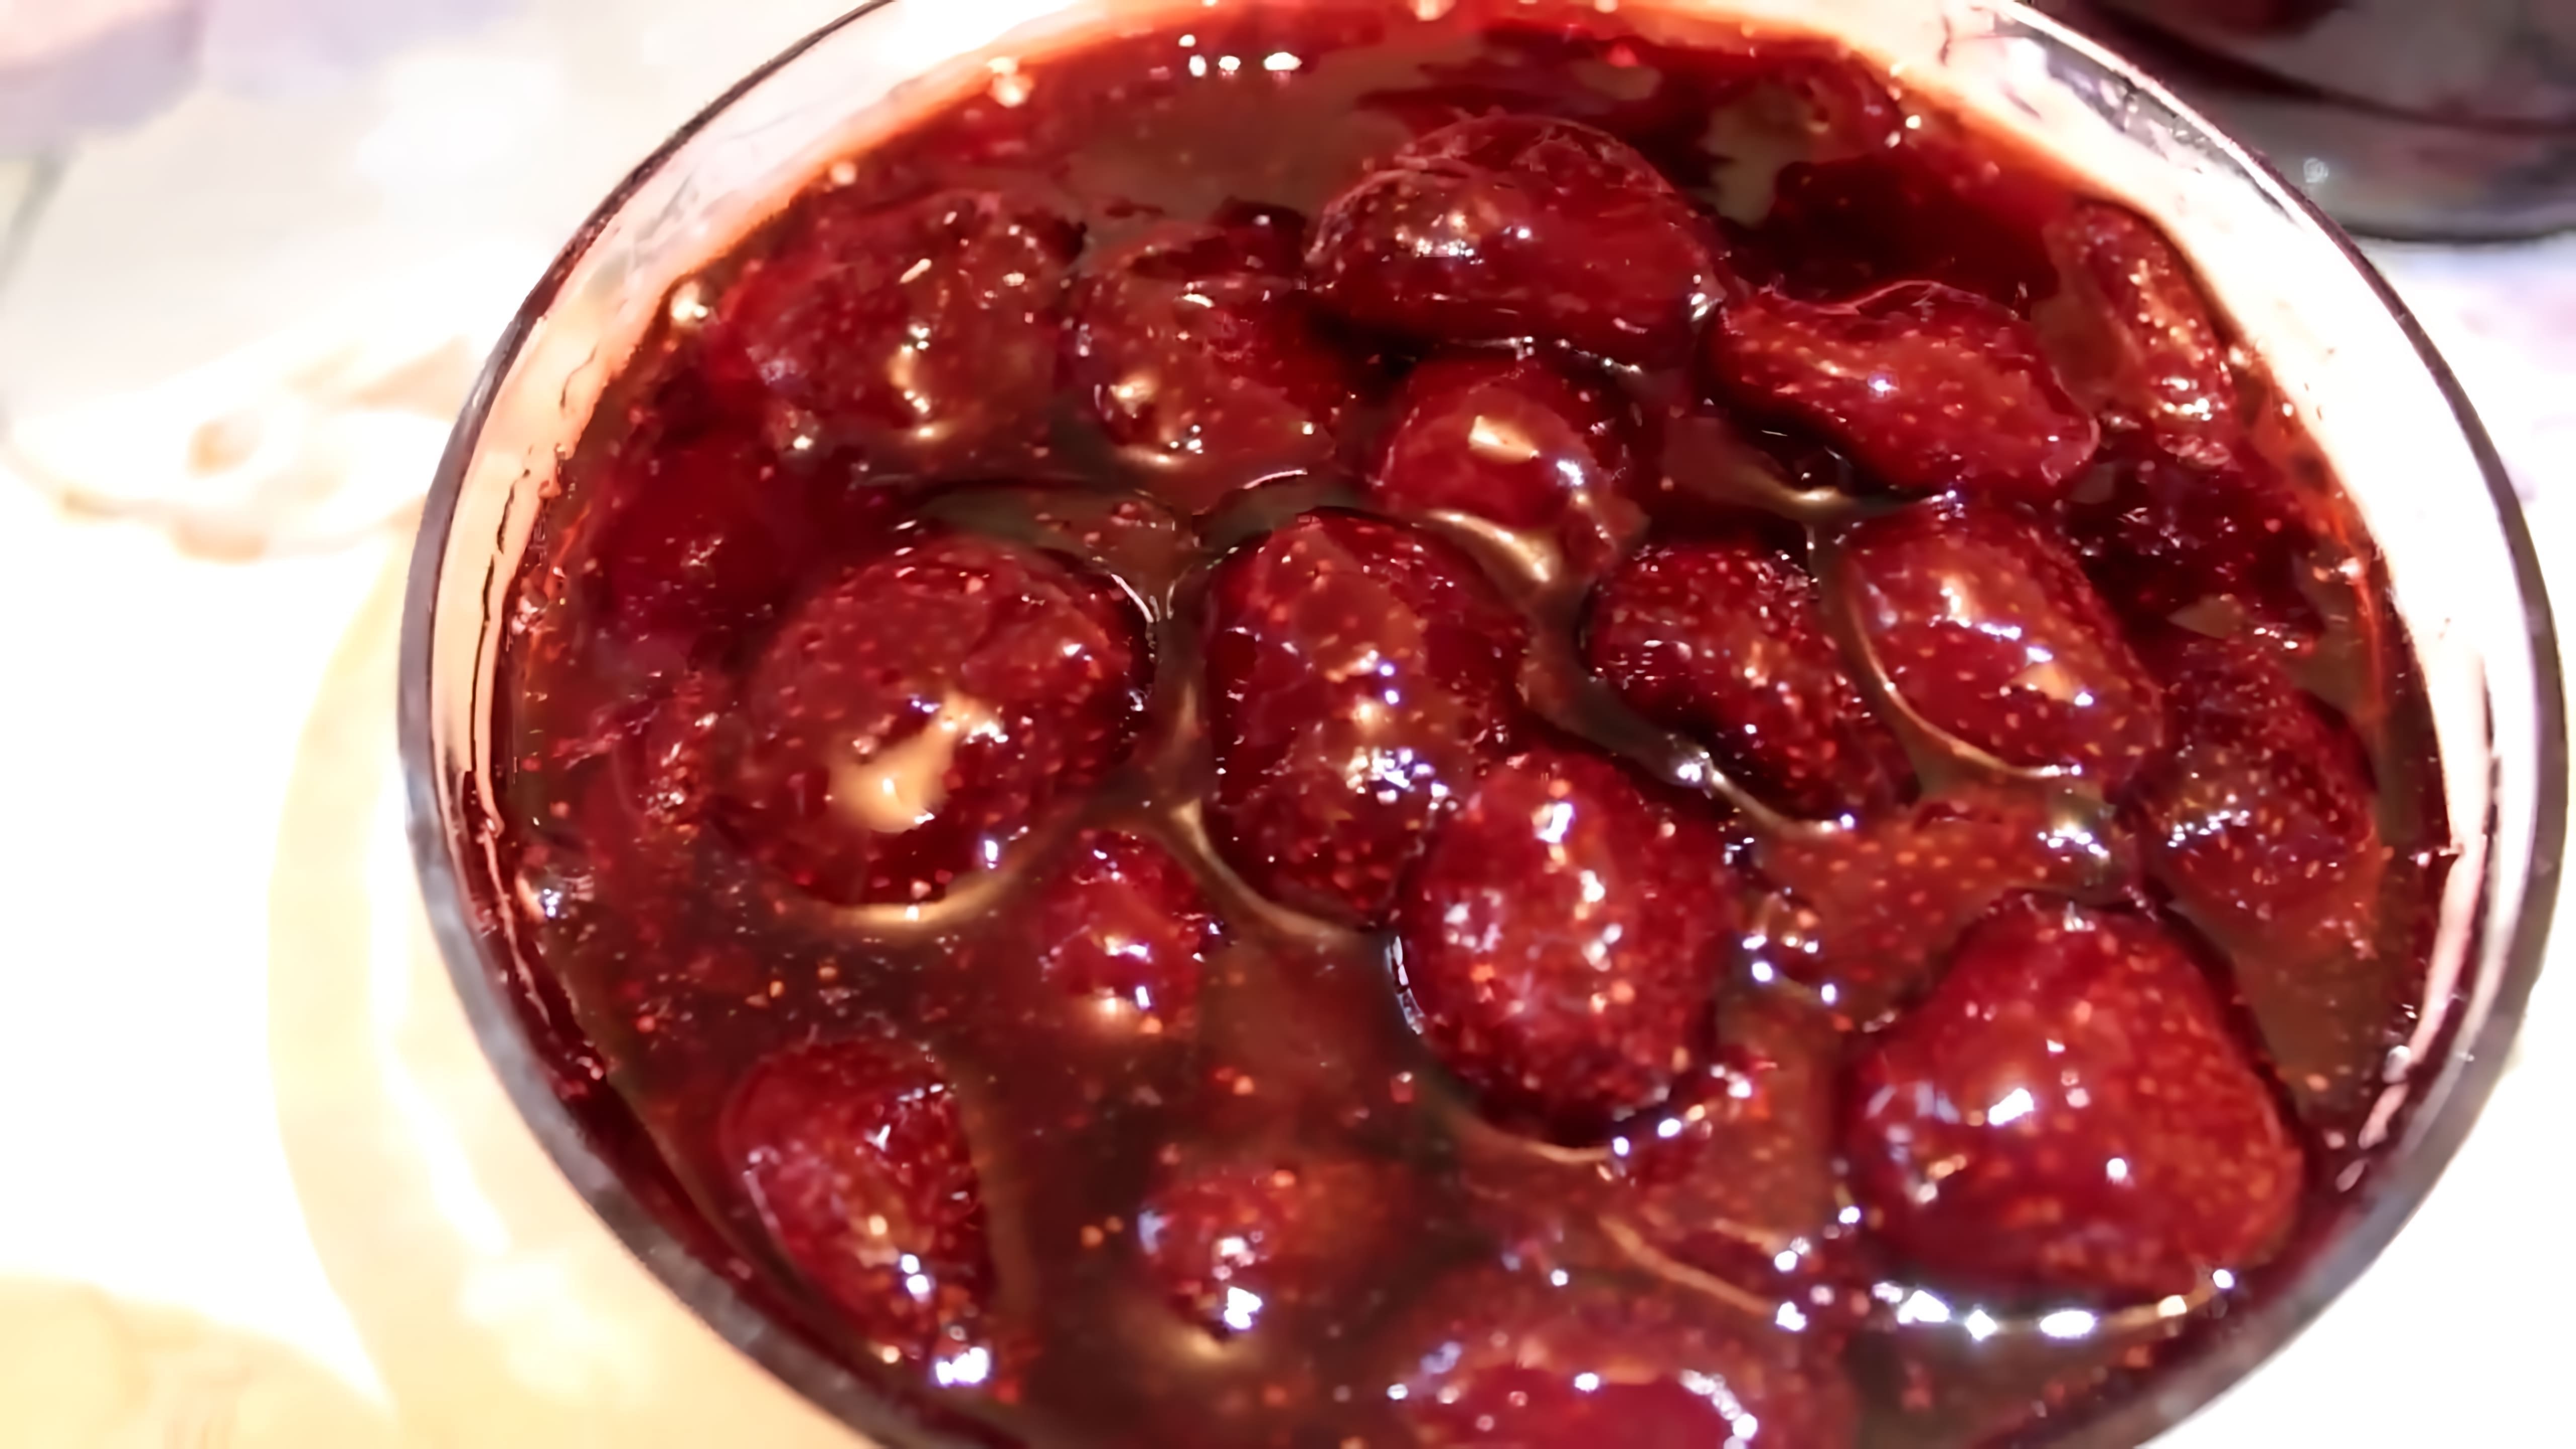 В этом видео демонстрируется процесс приготовления клубничного варенья по рецепту STRAWBERRY JAM CILEK RICELI